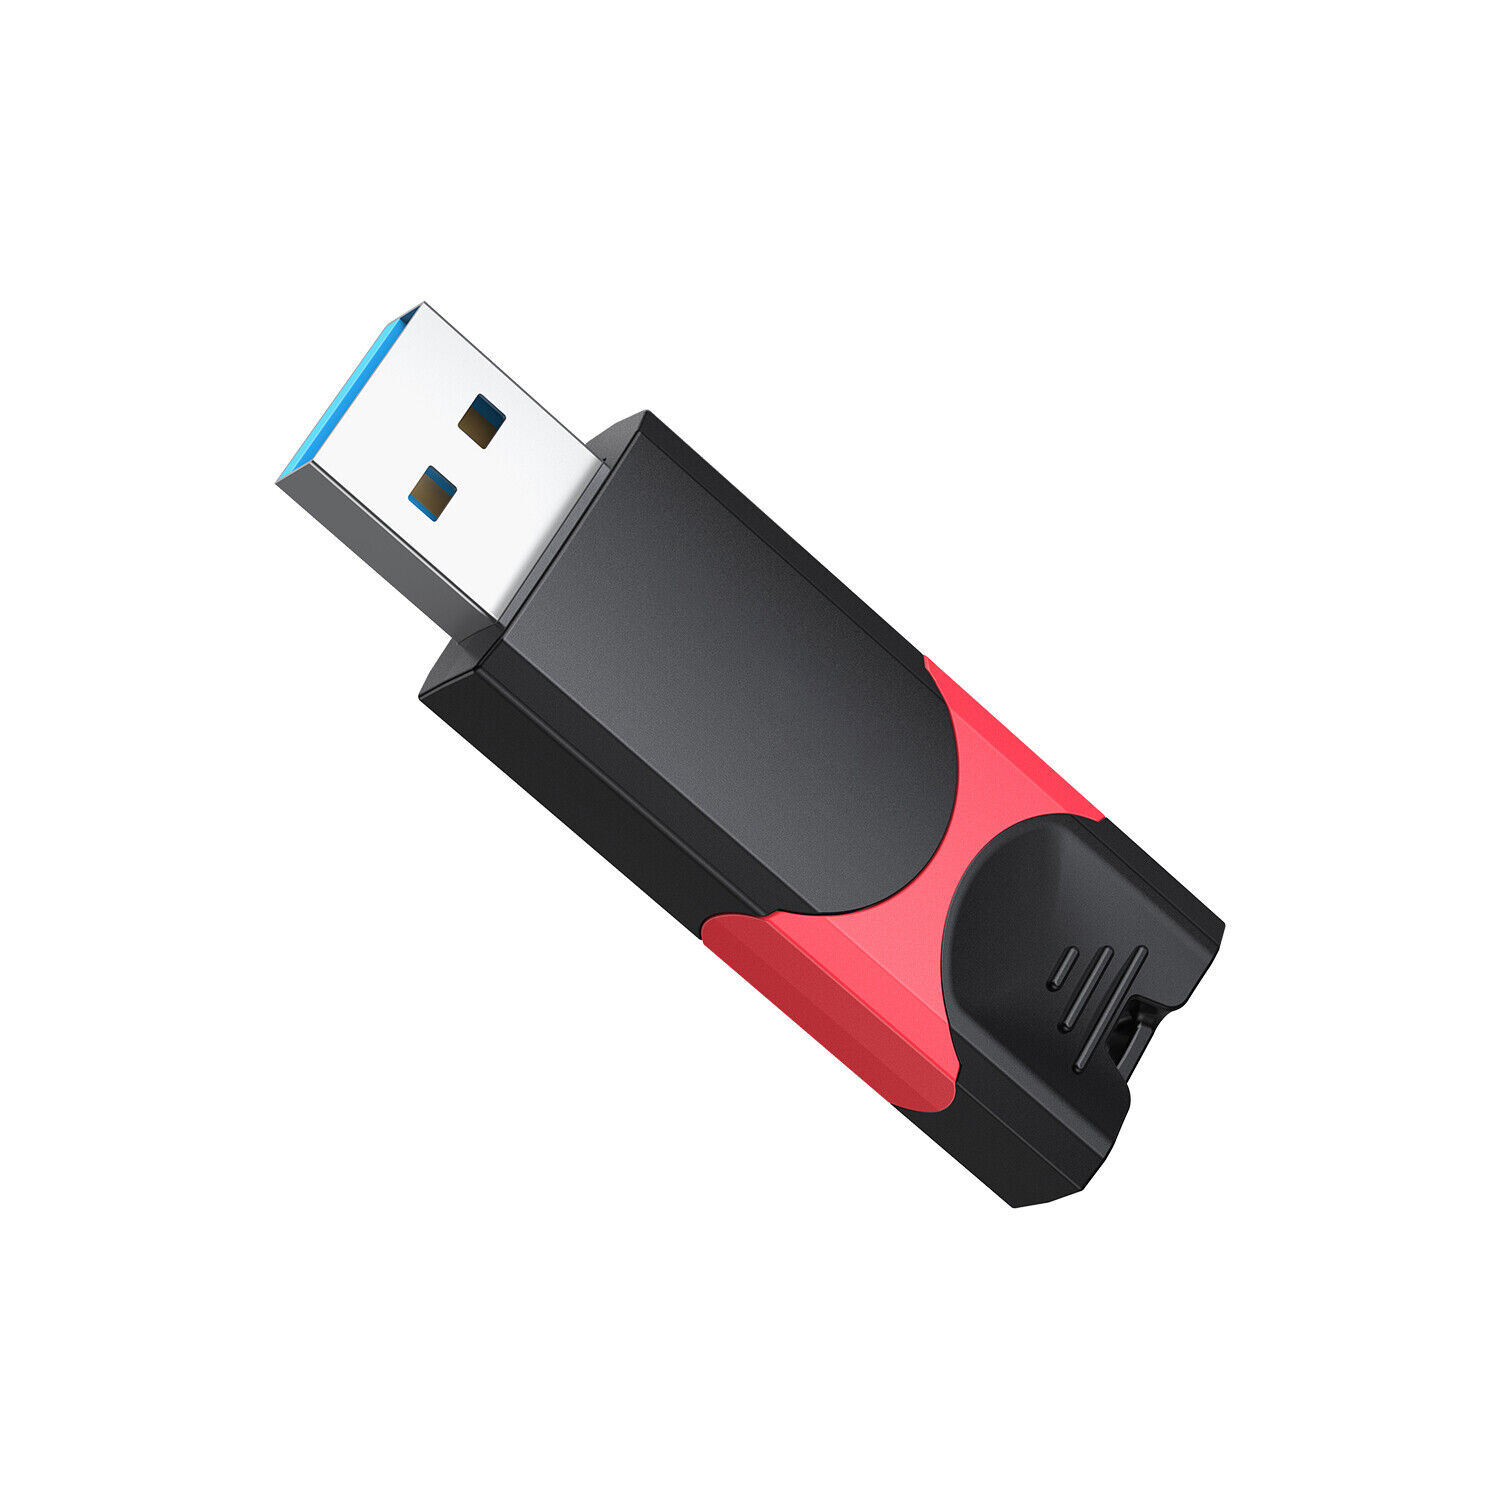 2x USB 3.0 Flash Drive Thumb Sticks Data Storage Stick Pen Drive 32GB,64GB 128GB